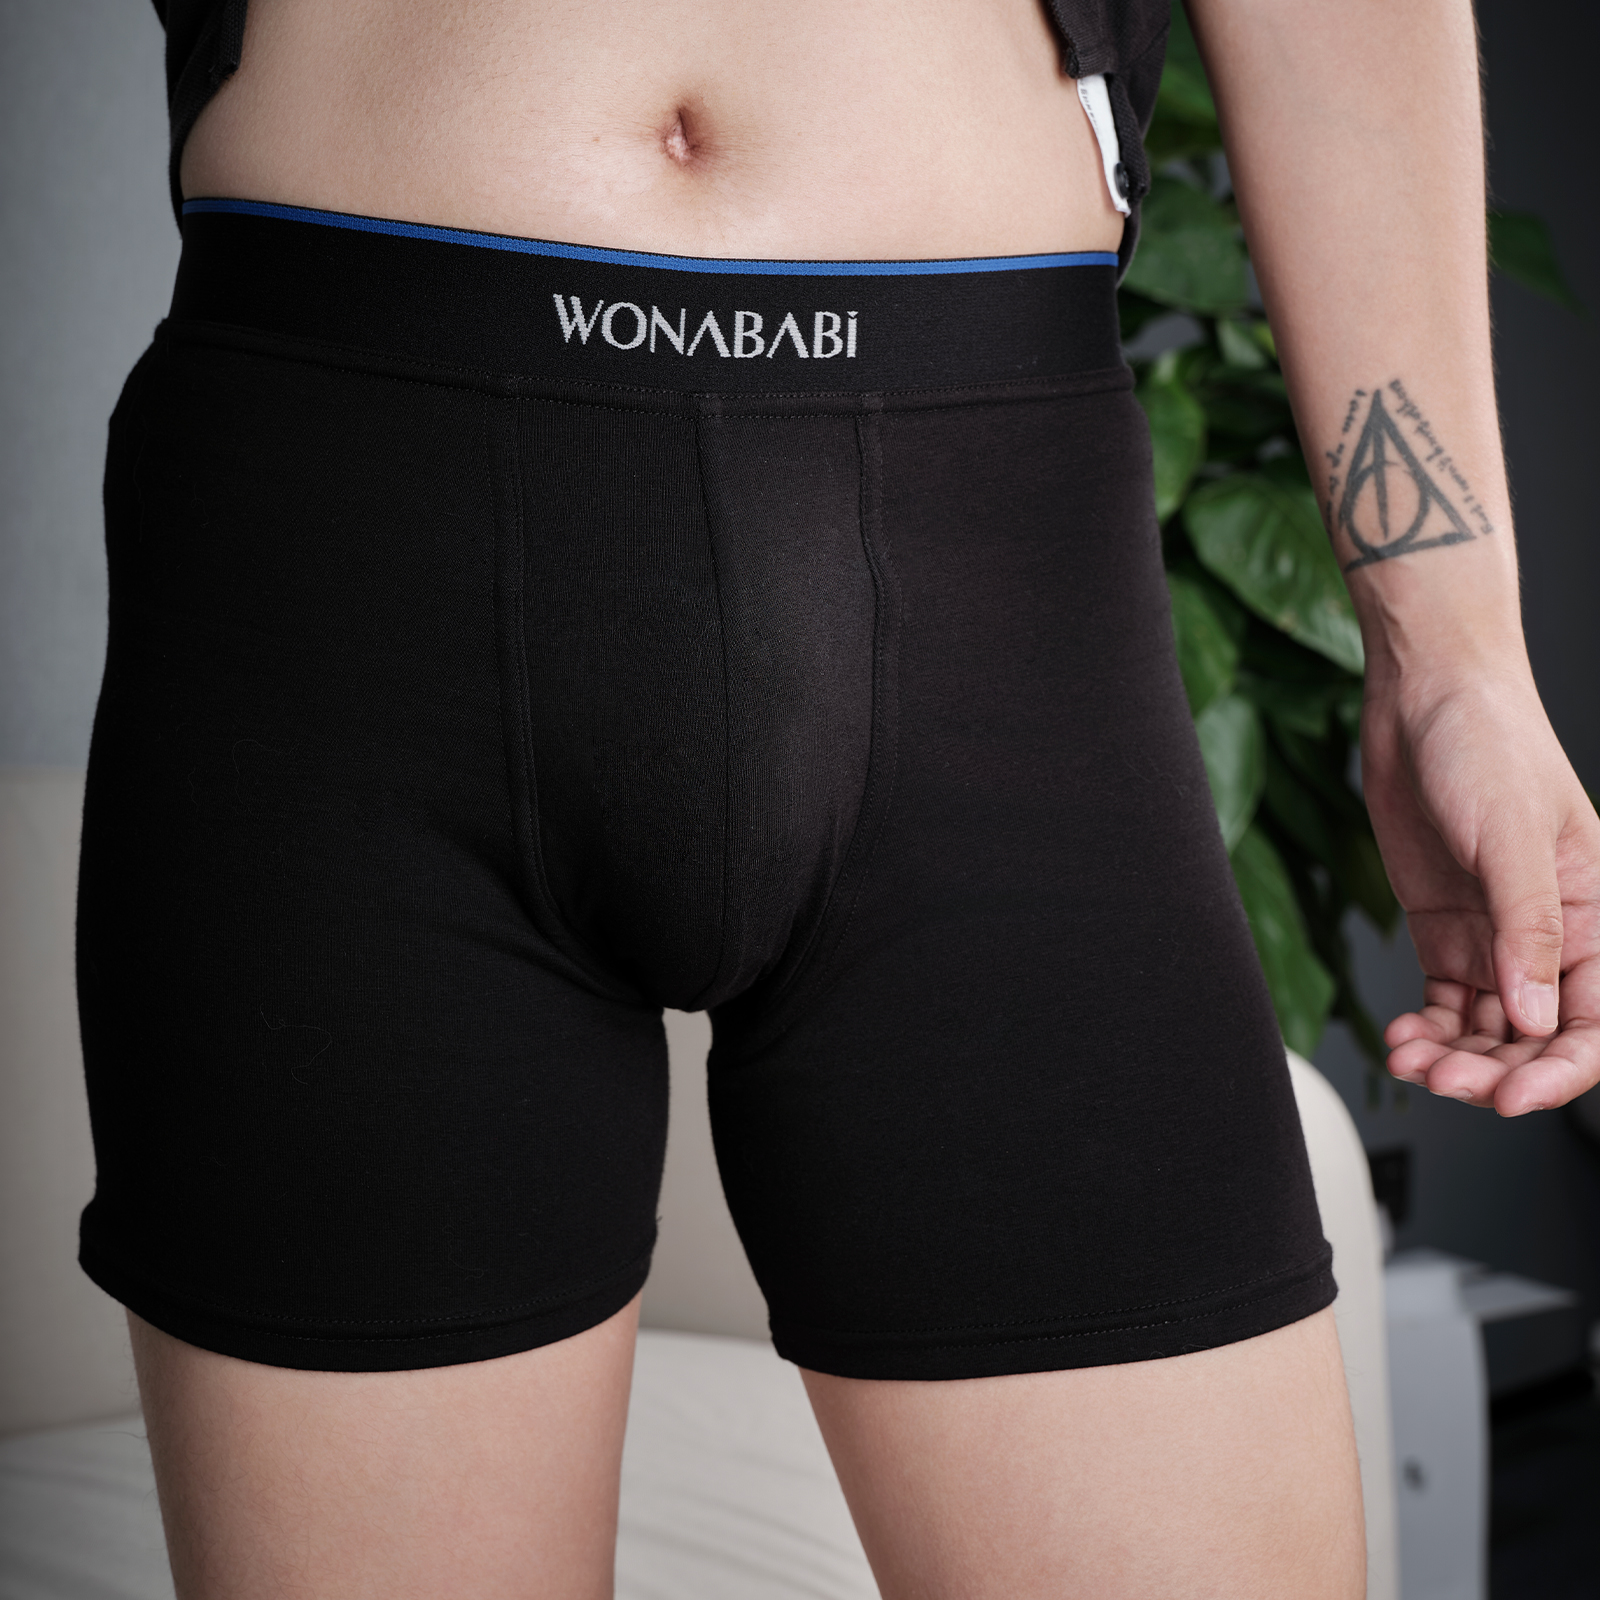 Levan BB - Boxer Brief Underwear - Mystery Made